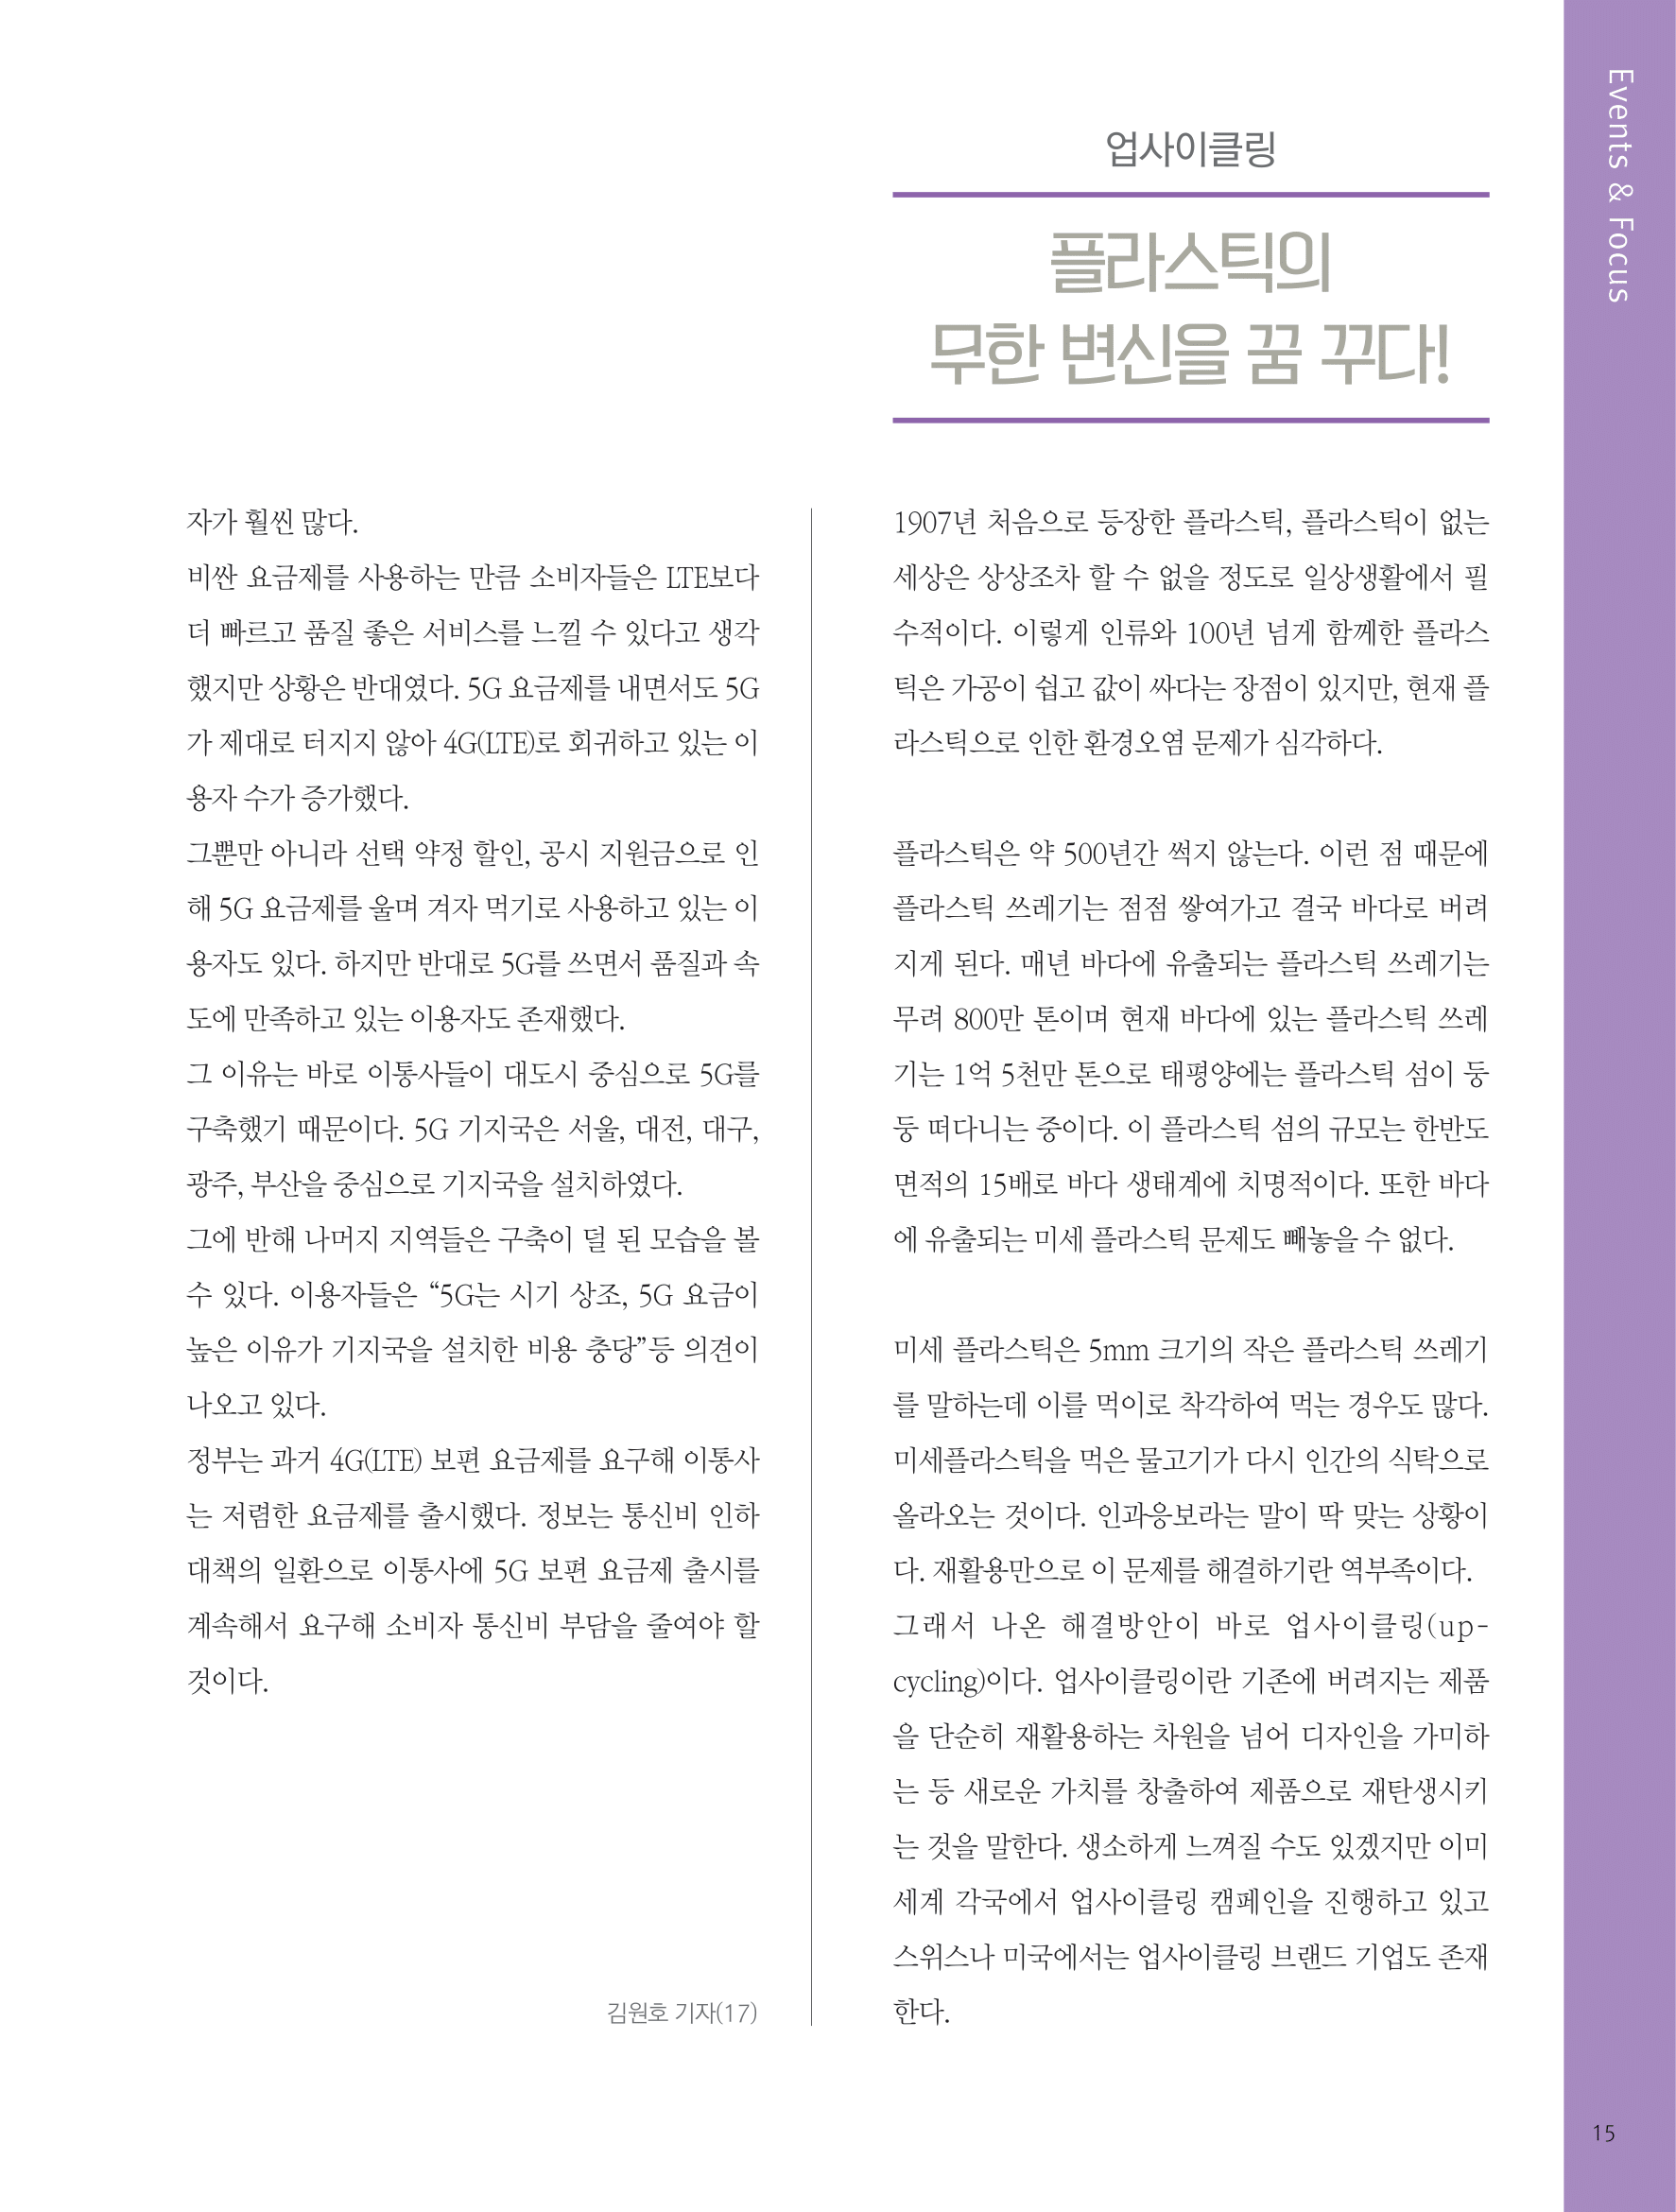 뜻새김 신문 76호 14